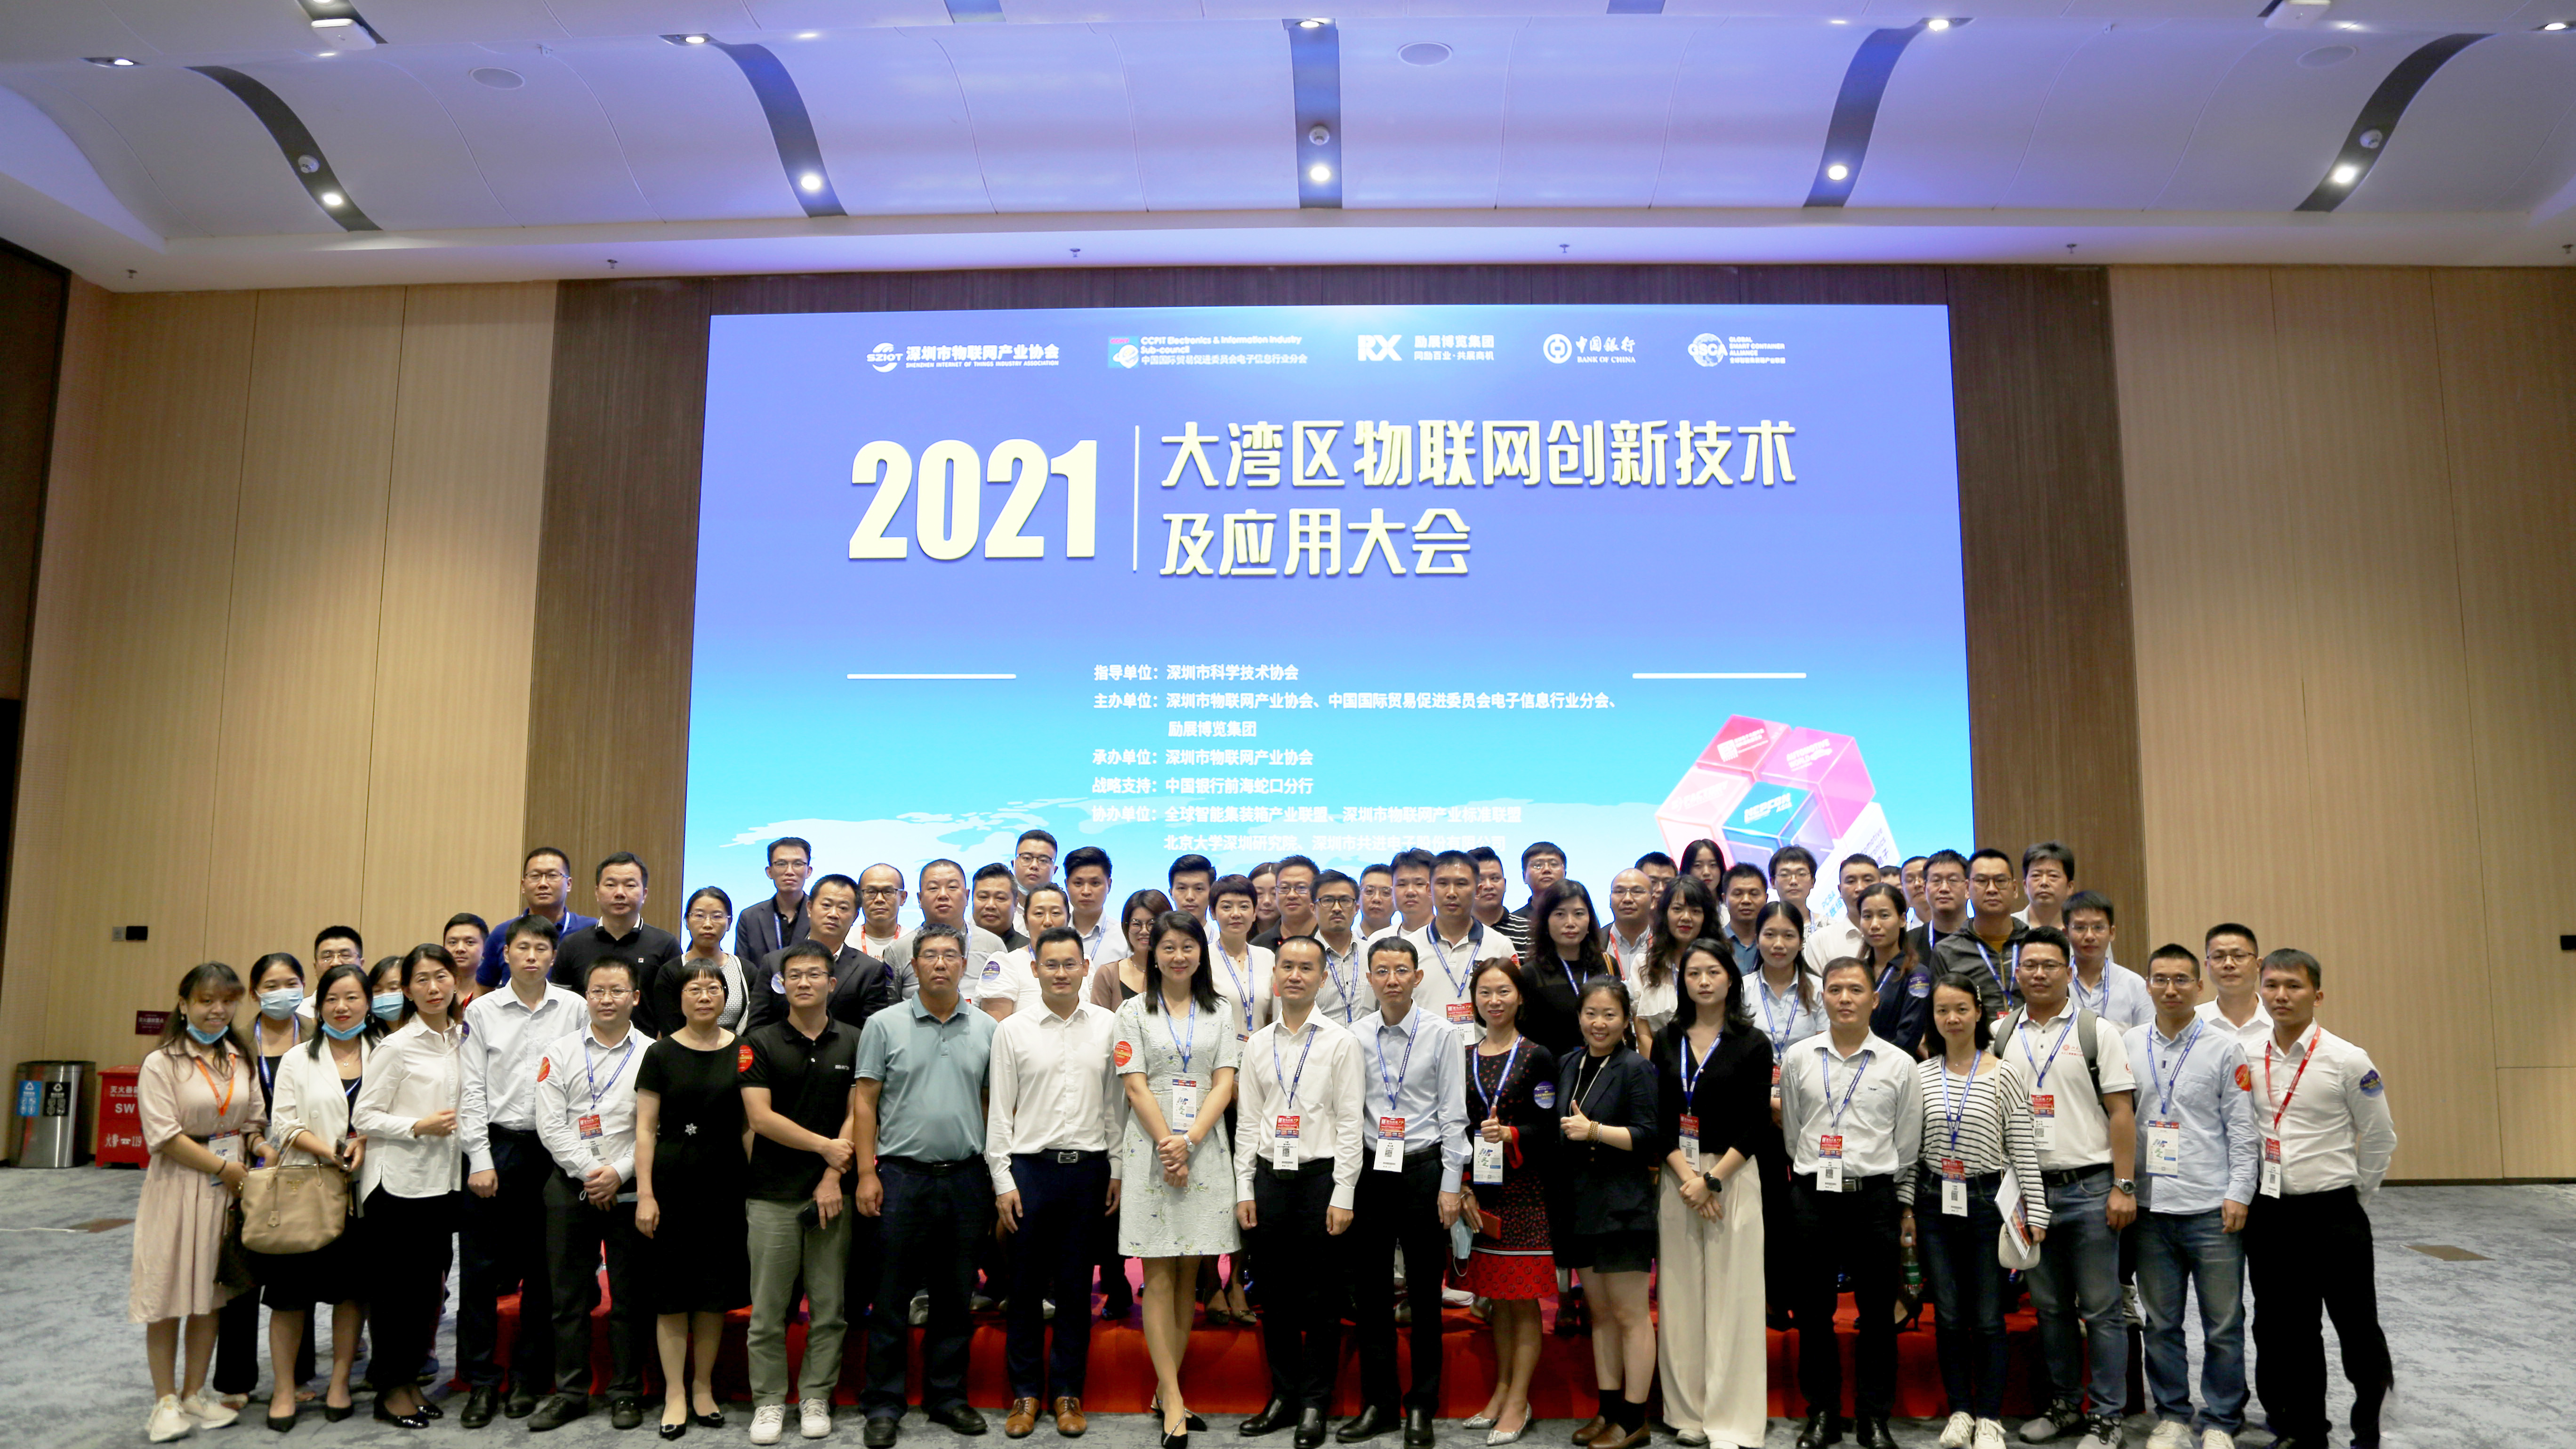 2021大湾区物联网创新技术及应用大会成功举办！再次见证深圳市物联网产业协会超强组织力！